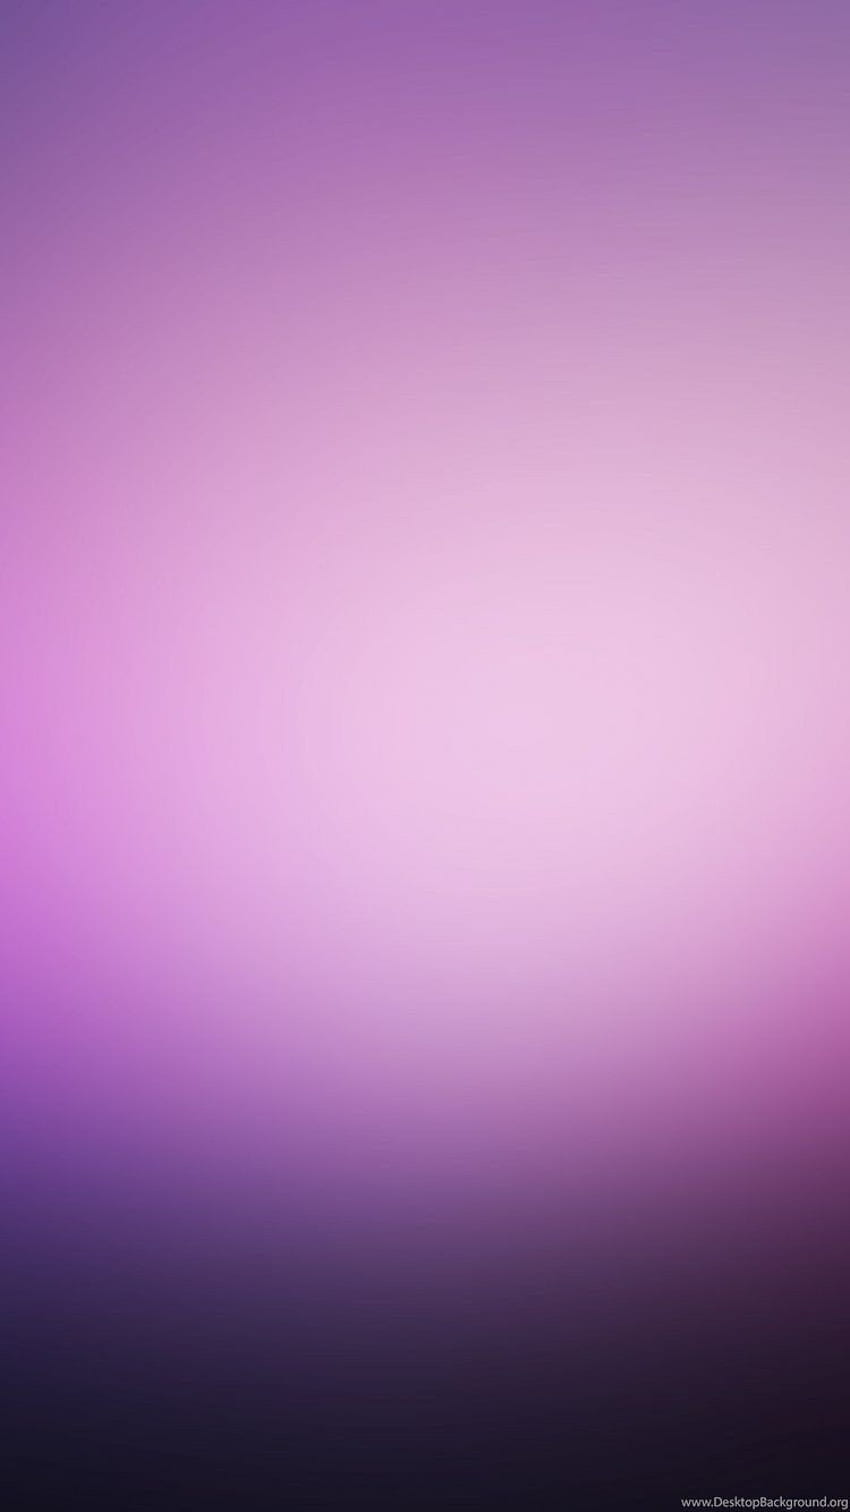 Hình nền iPhone 6 trừu tượng màu tím và hồng giúp cho màn hình iPhone của bạn nổi bật hơn bao giờ hết. Với những đường nét độc đáo và màu sắc tươi sáng, hình nền này chắc chắn sẽ khiến cho bạn cảm thấy thích thú và hài lòng khi sử dụng.